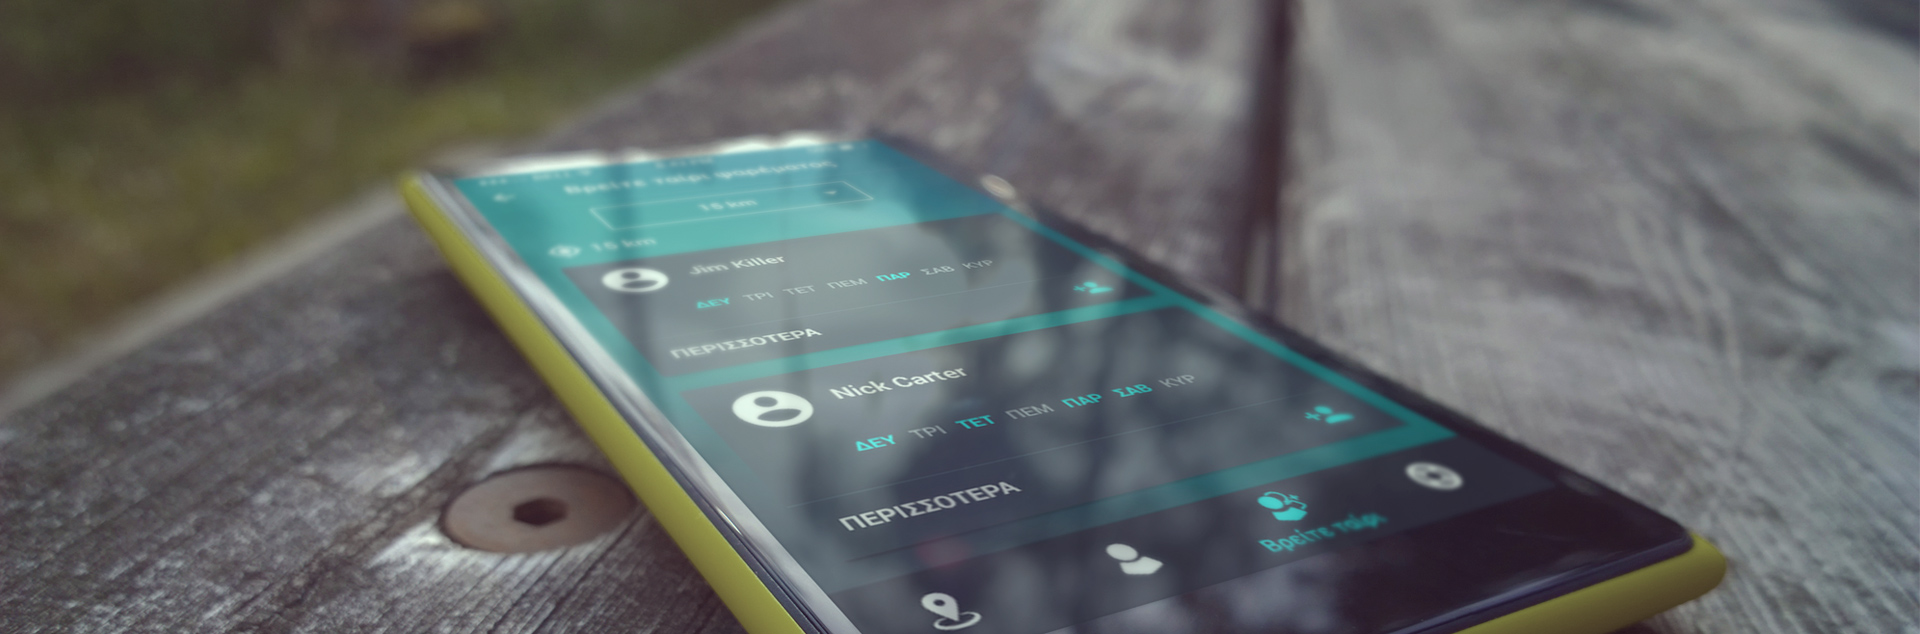 BlueSpear mobile app - availability